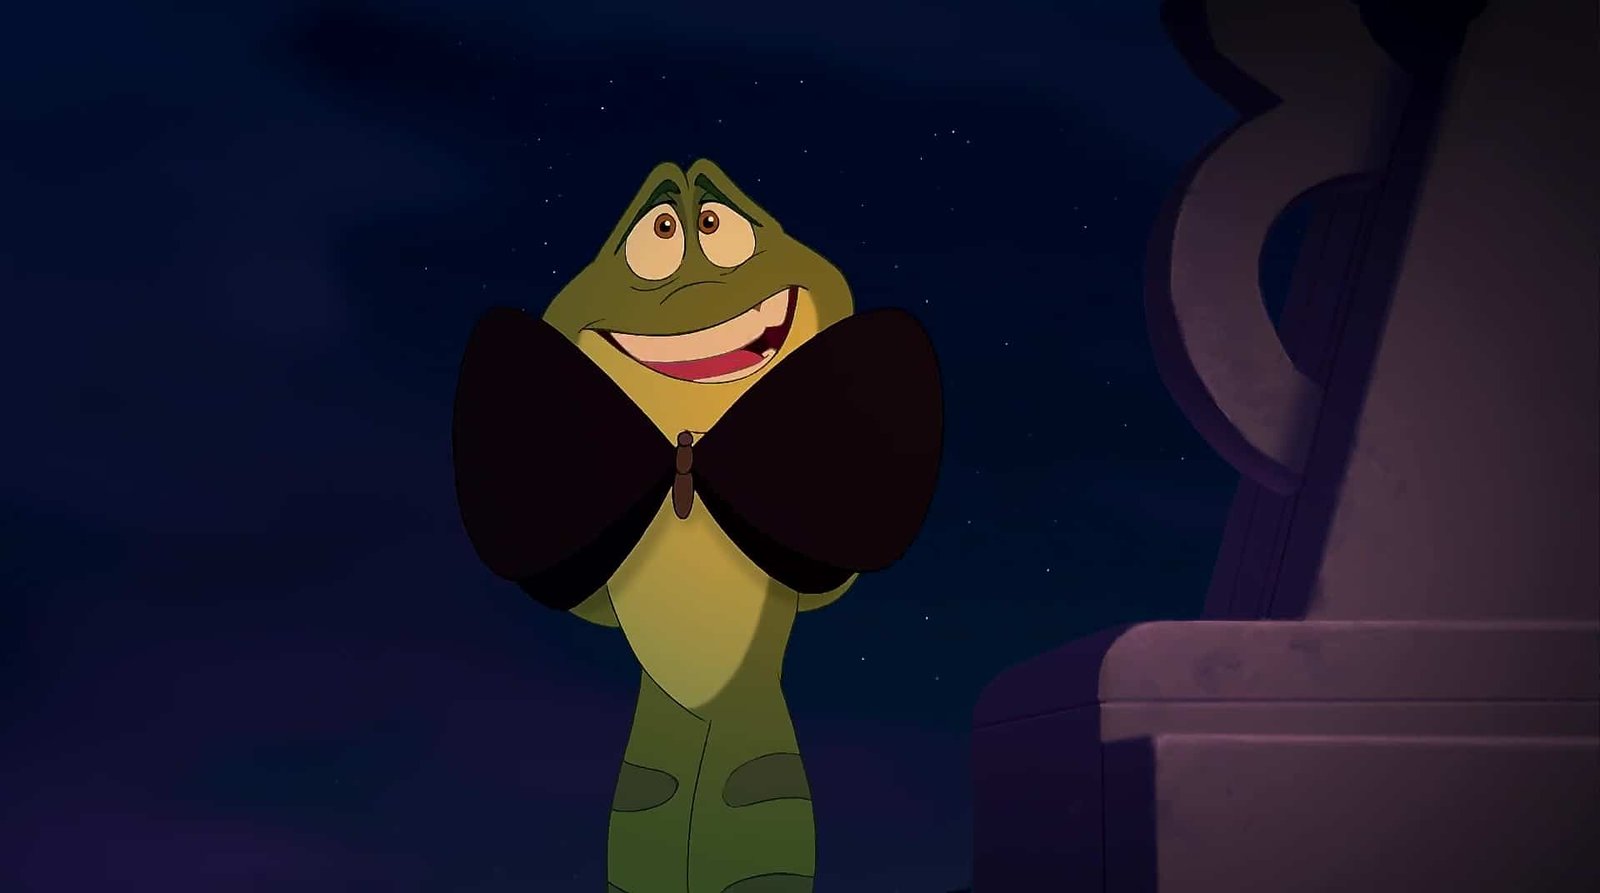 Une joyeuse chenille animée, un personnage de Disney, portant un nœud papillon, debout sous un ciel nocturne.